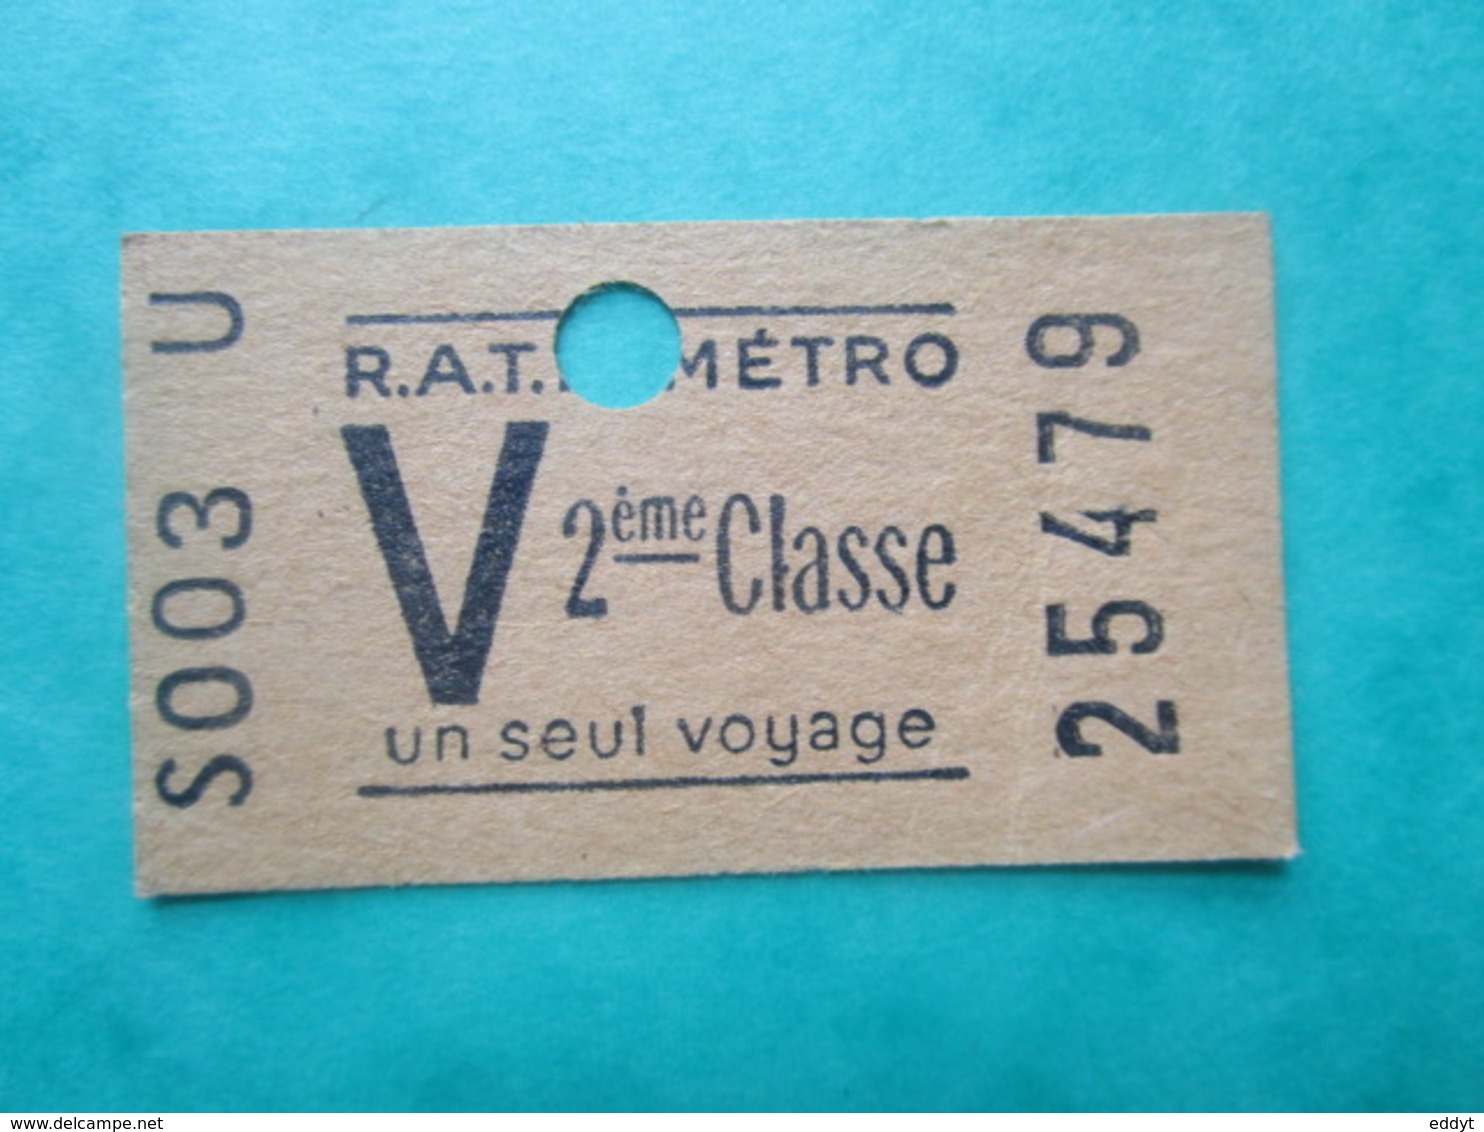 TICKET  Métro  RATP  PARIS " V "  - 2° Classe - UN SEUL VOYAGE   - 1958 - TBE - Welt